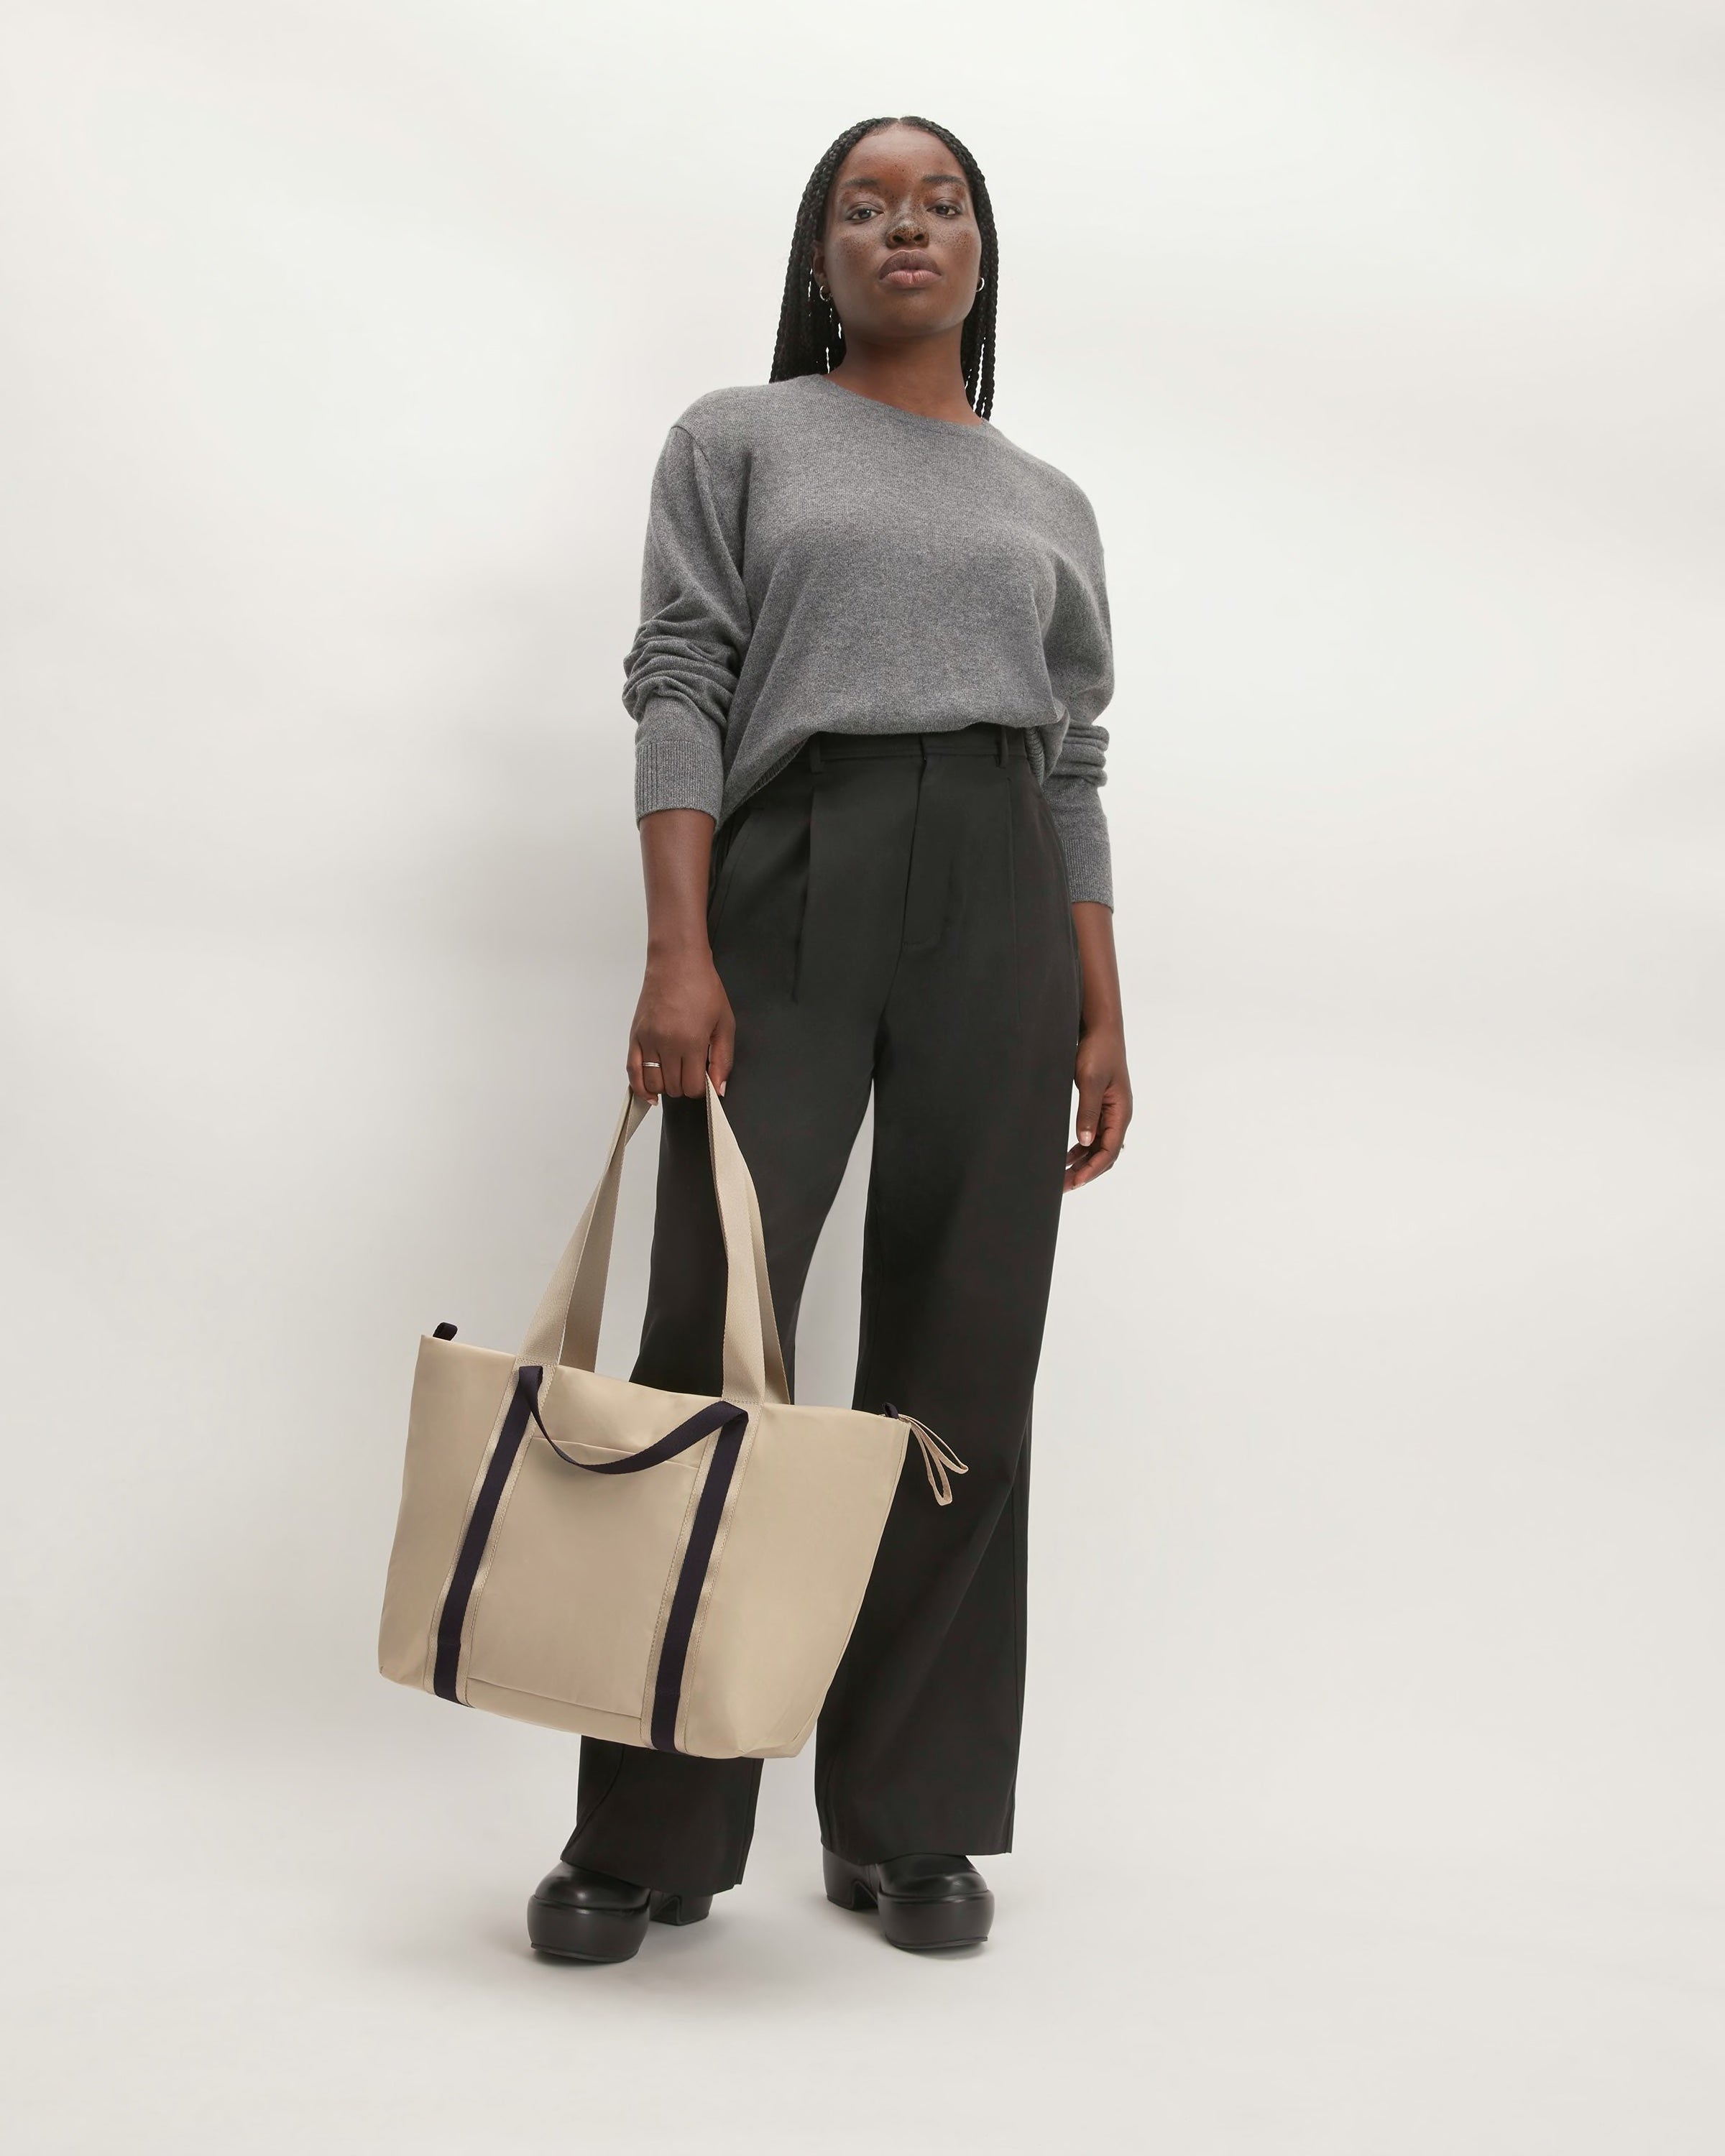 Buy Trendy Versatile Women shoulder bags at Amazon.in